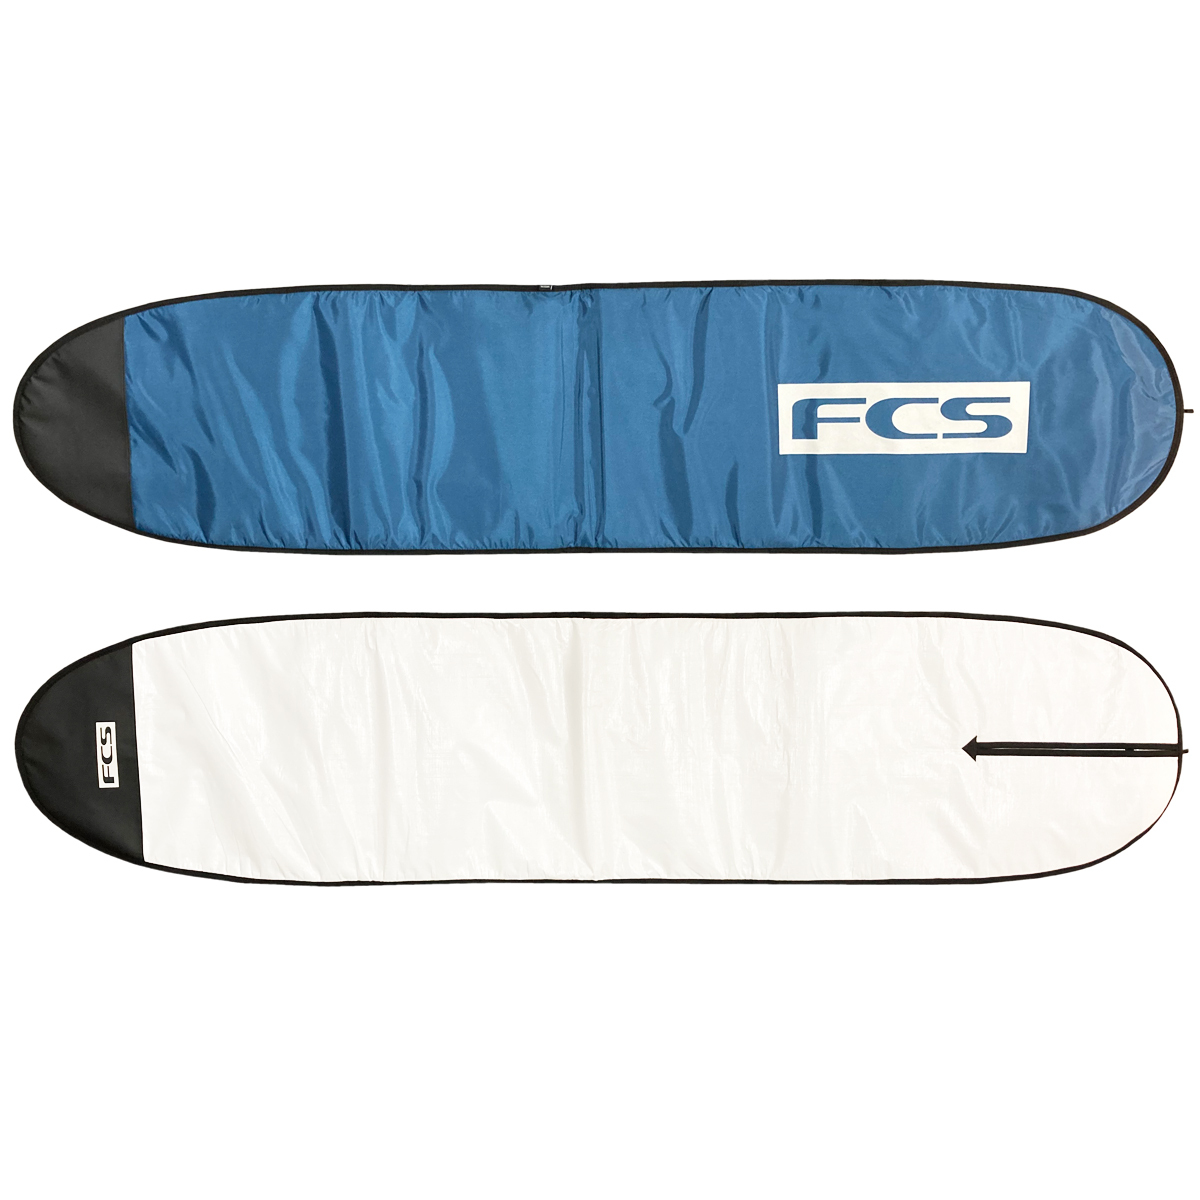 サーフボードケース ロングボード 9'6" FCS エフシーエス CLASSIC Long Board クラシック ハードケース サーフボード サーフィン 5ミリパッド